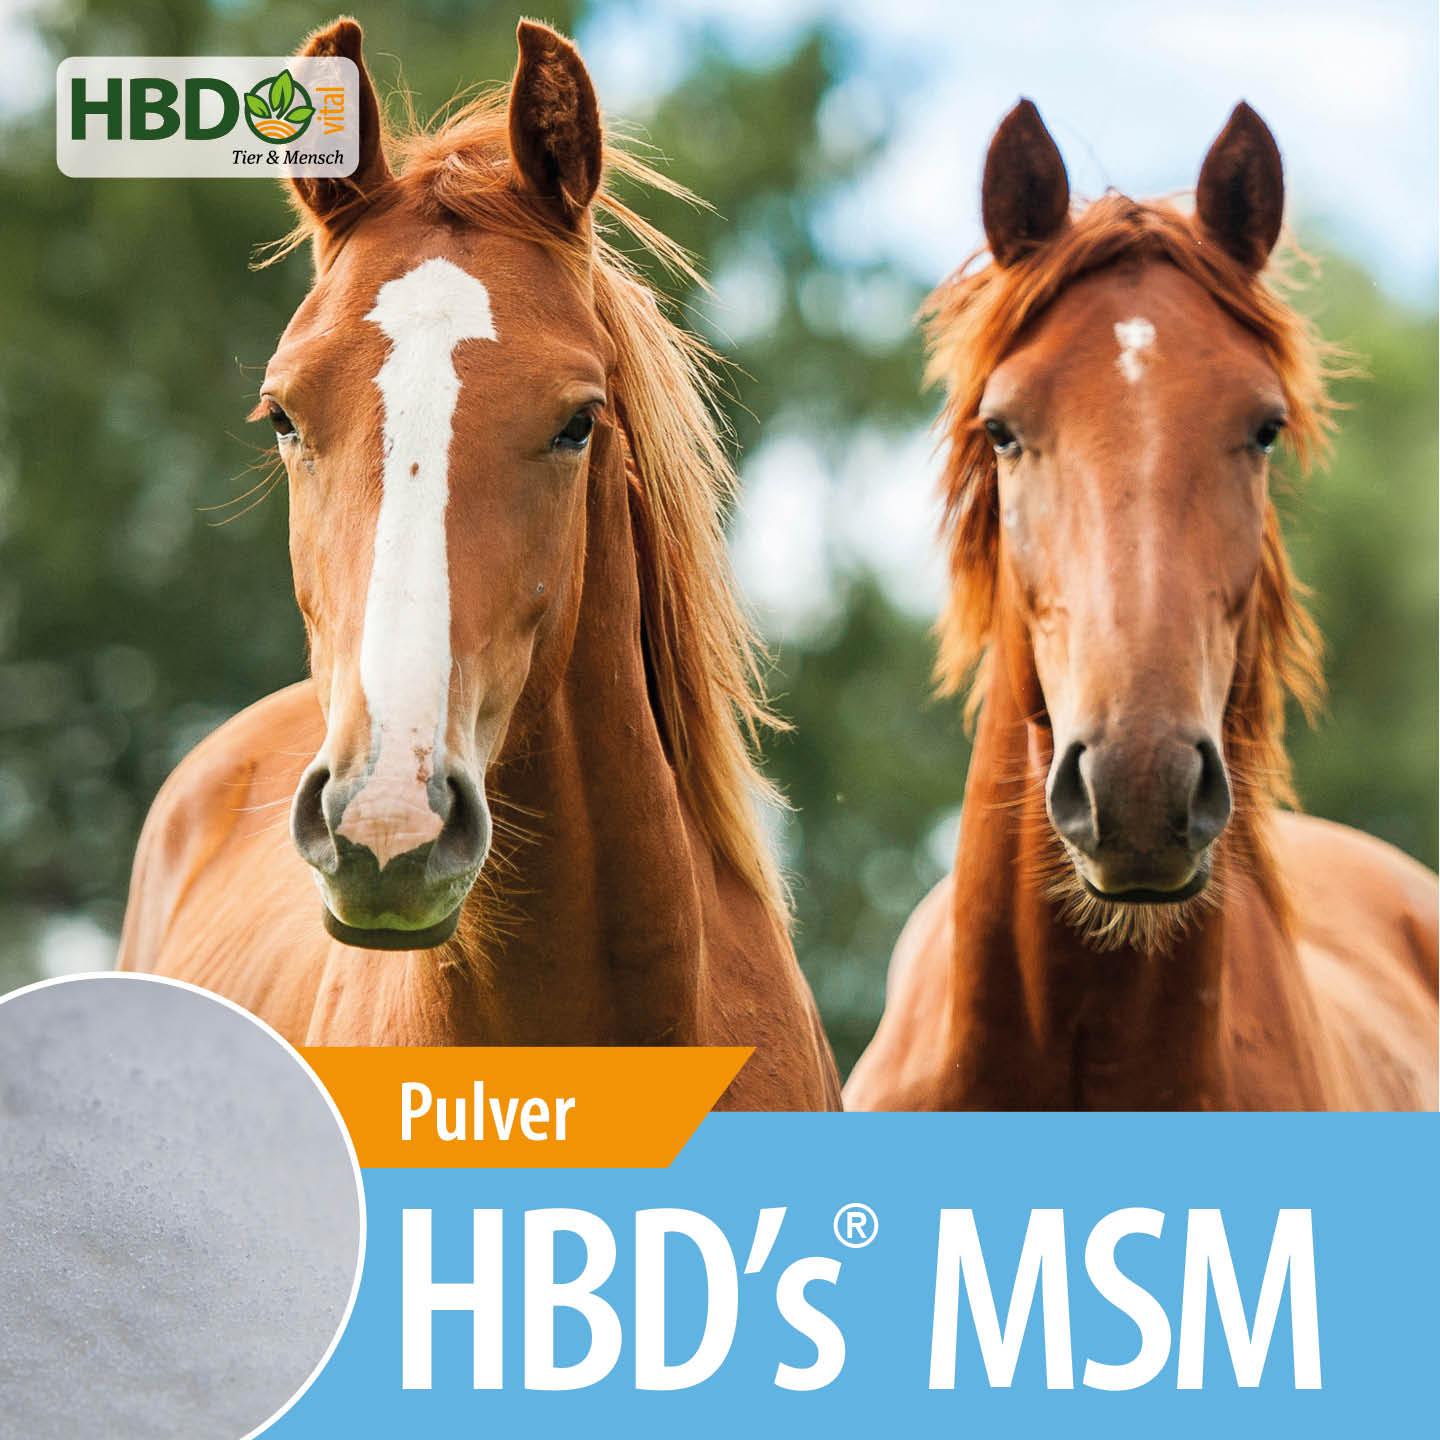 Shopbild für HBD’s MSM - Das Bild zeigt den Produktnamen sowie den Hinweis, dass es sich um Pulver handelt. Zwei braune Pferde sind zu sehen.